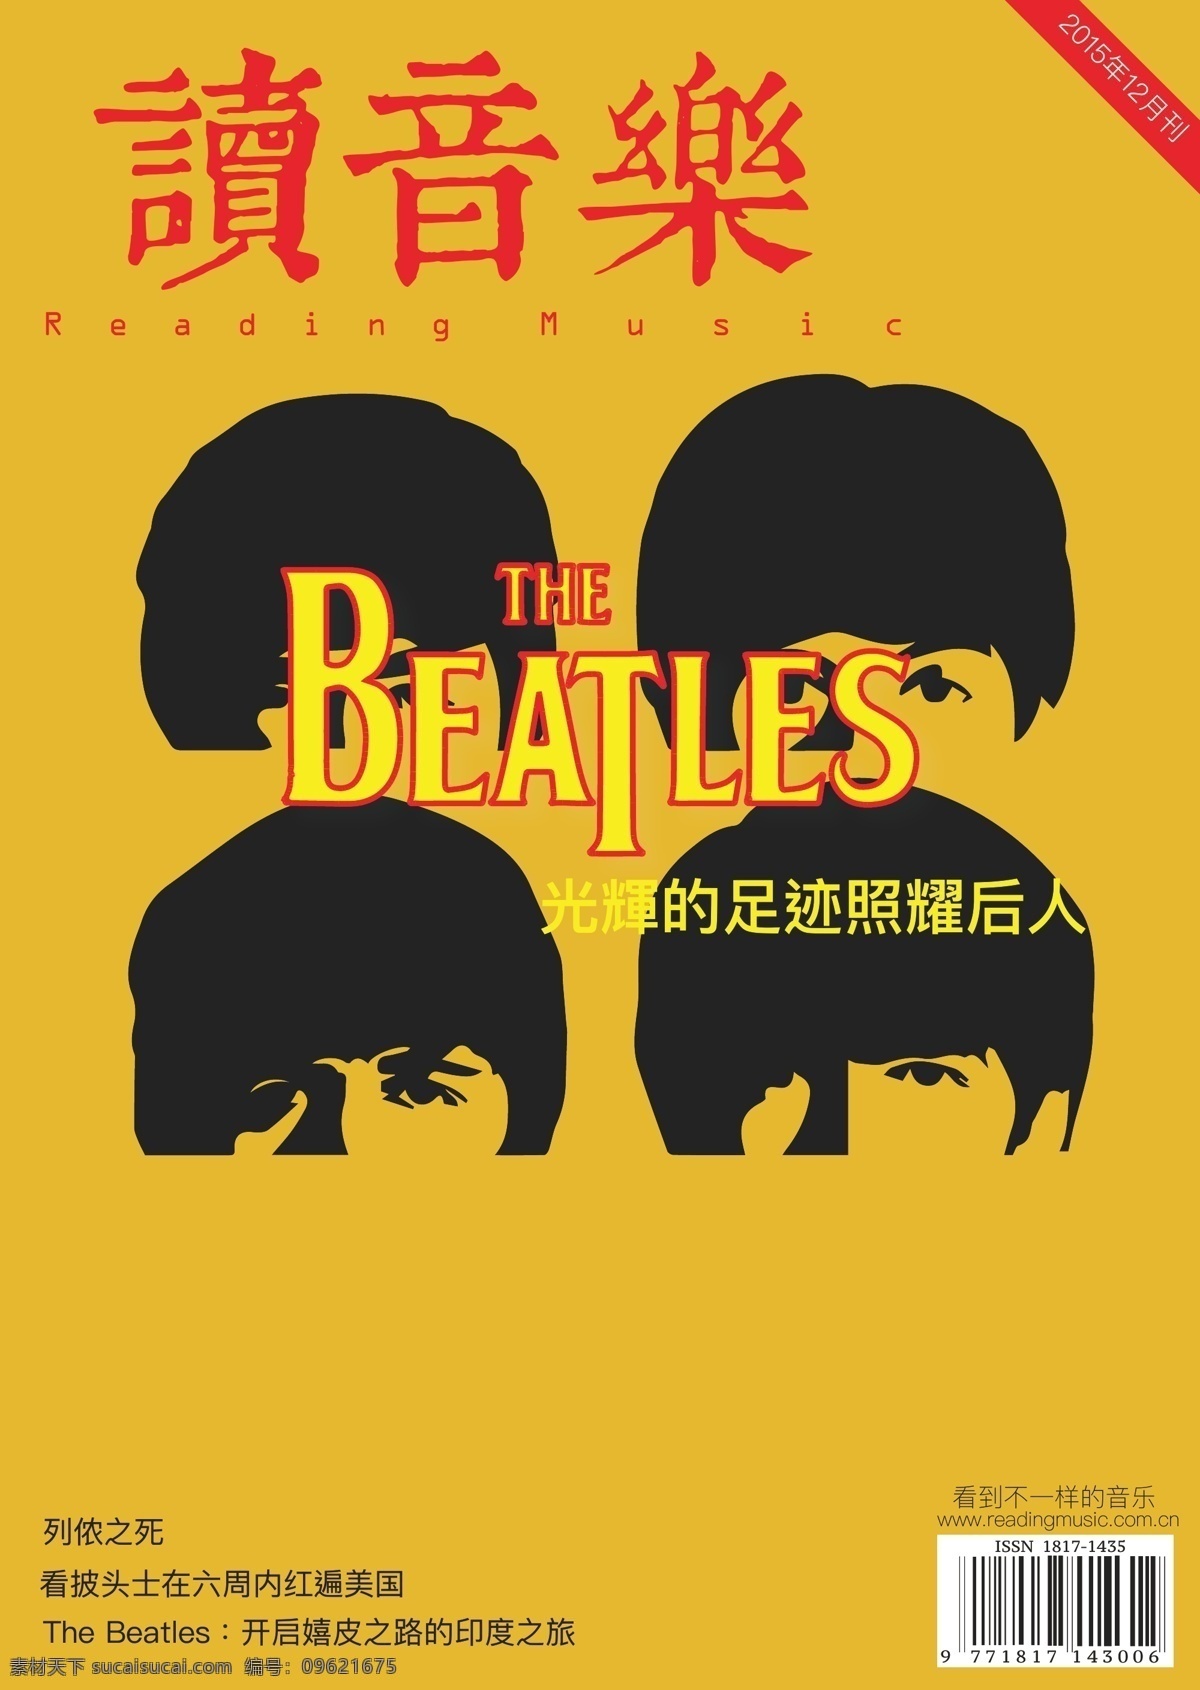 披 頭 士 音 樂 雜 誌 封面 設 計 the beatles 音樂 雜誌 黄色